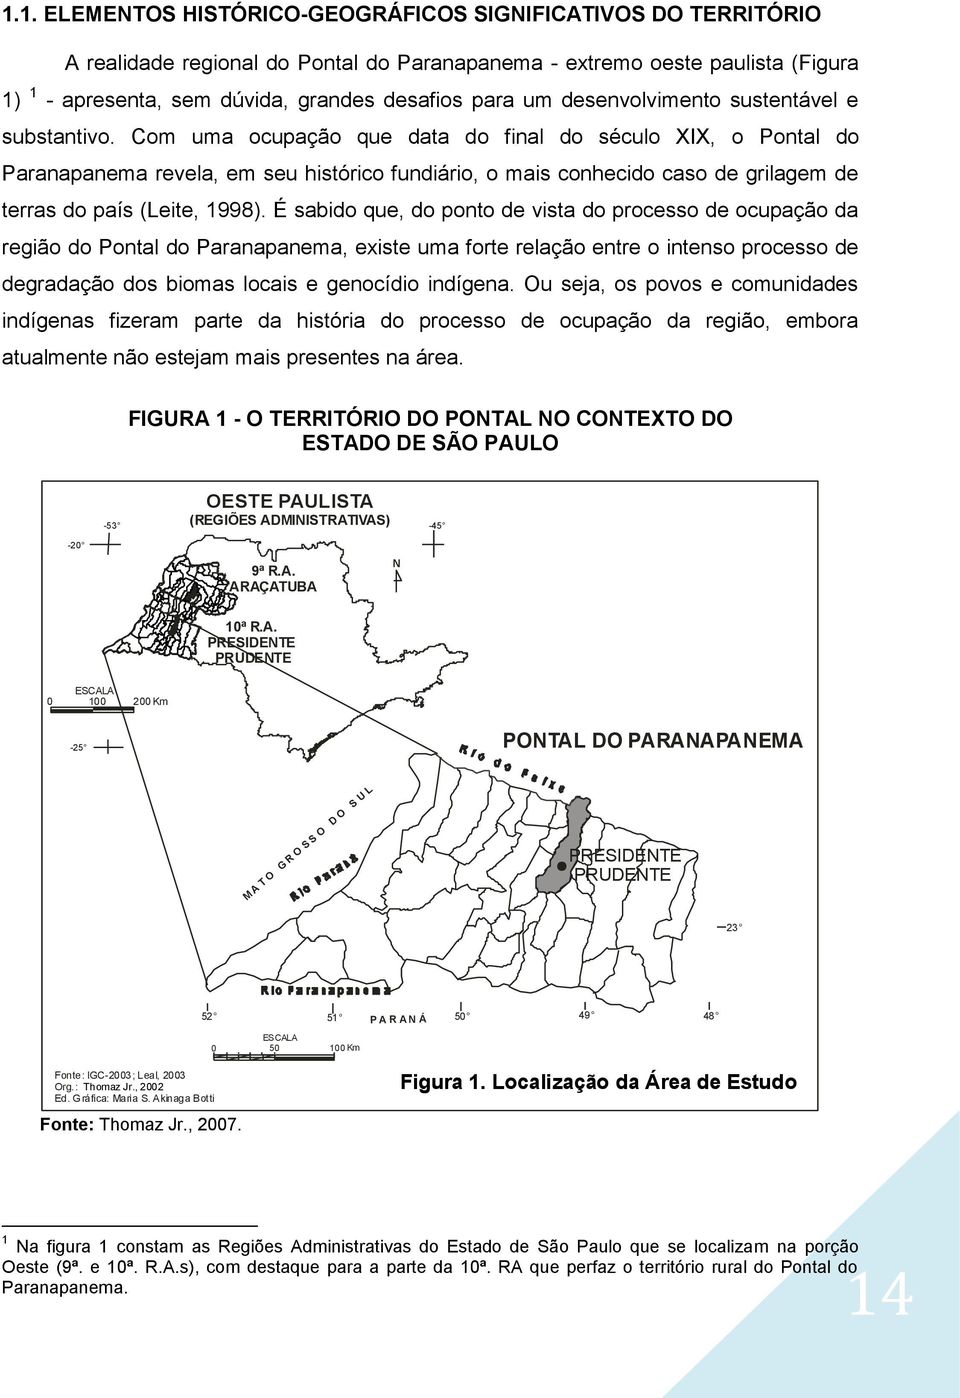 Com uma ocupação que data do final do século XIX, o Pontal do Paranapanema revela, em seu histórico fundiário, o mais conhecido caso de grilagem de terras do país (Leite, 1998).